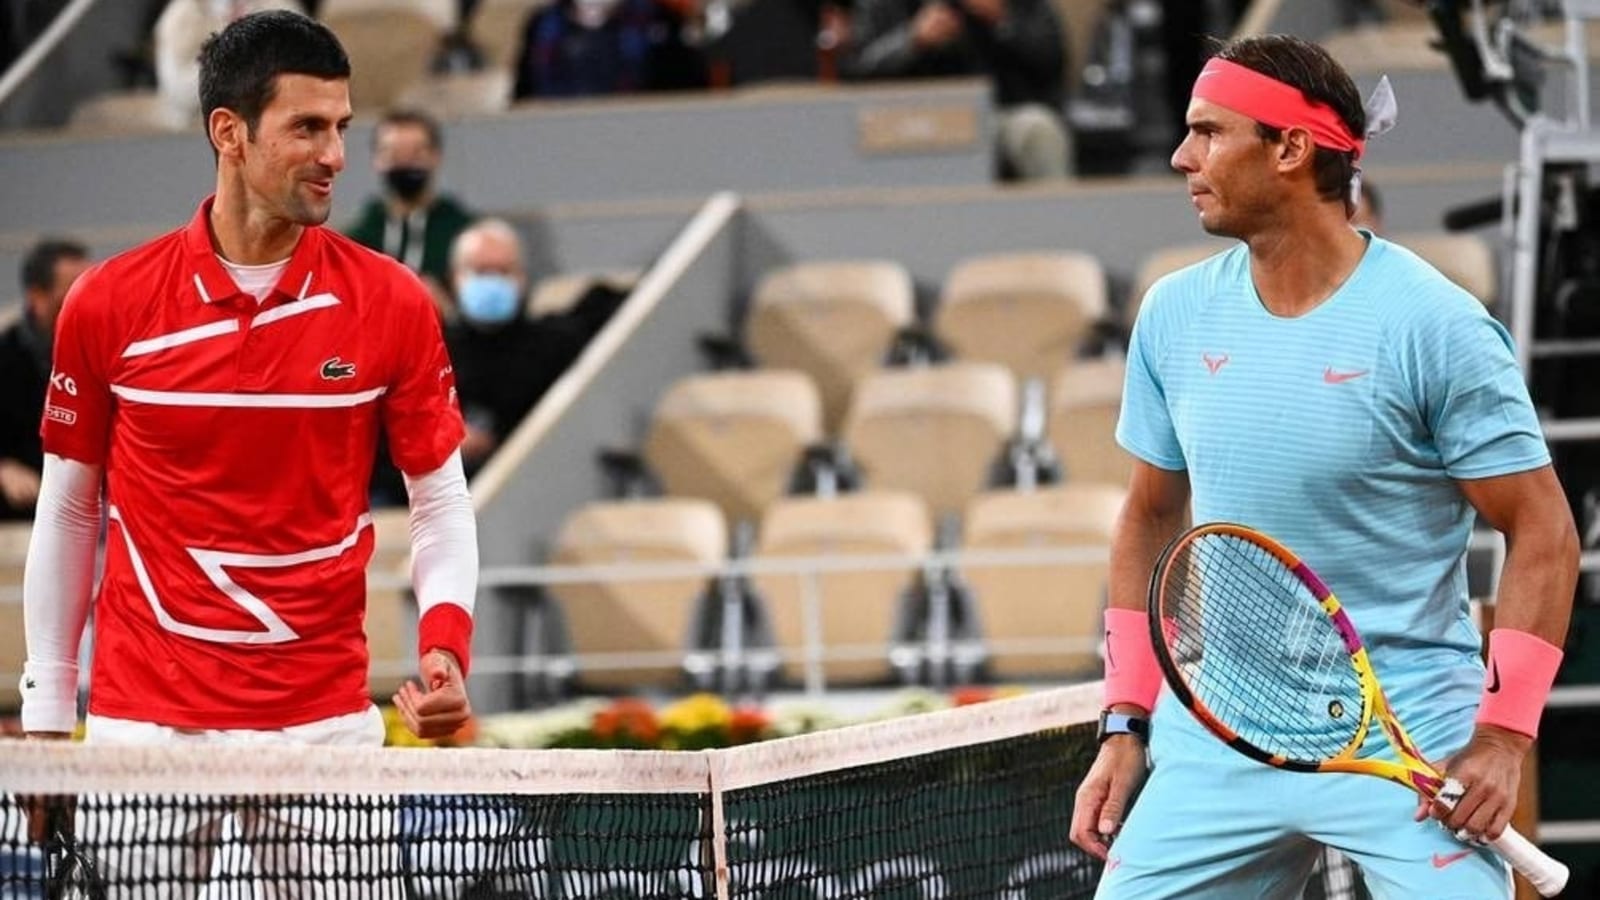 Tilsyneladende George Bernard Allieret Nadal has his say on Djokovic being granted visa to play Australian Open  2023 | Tennis News - Hindustan Times